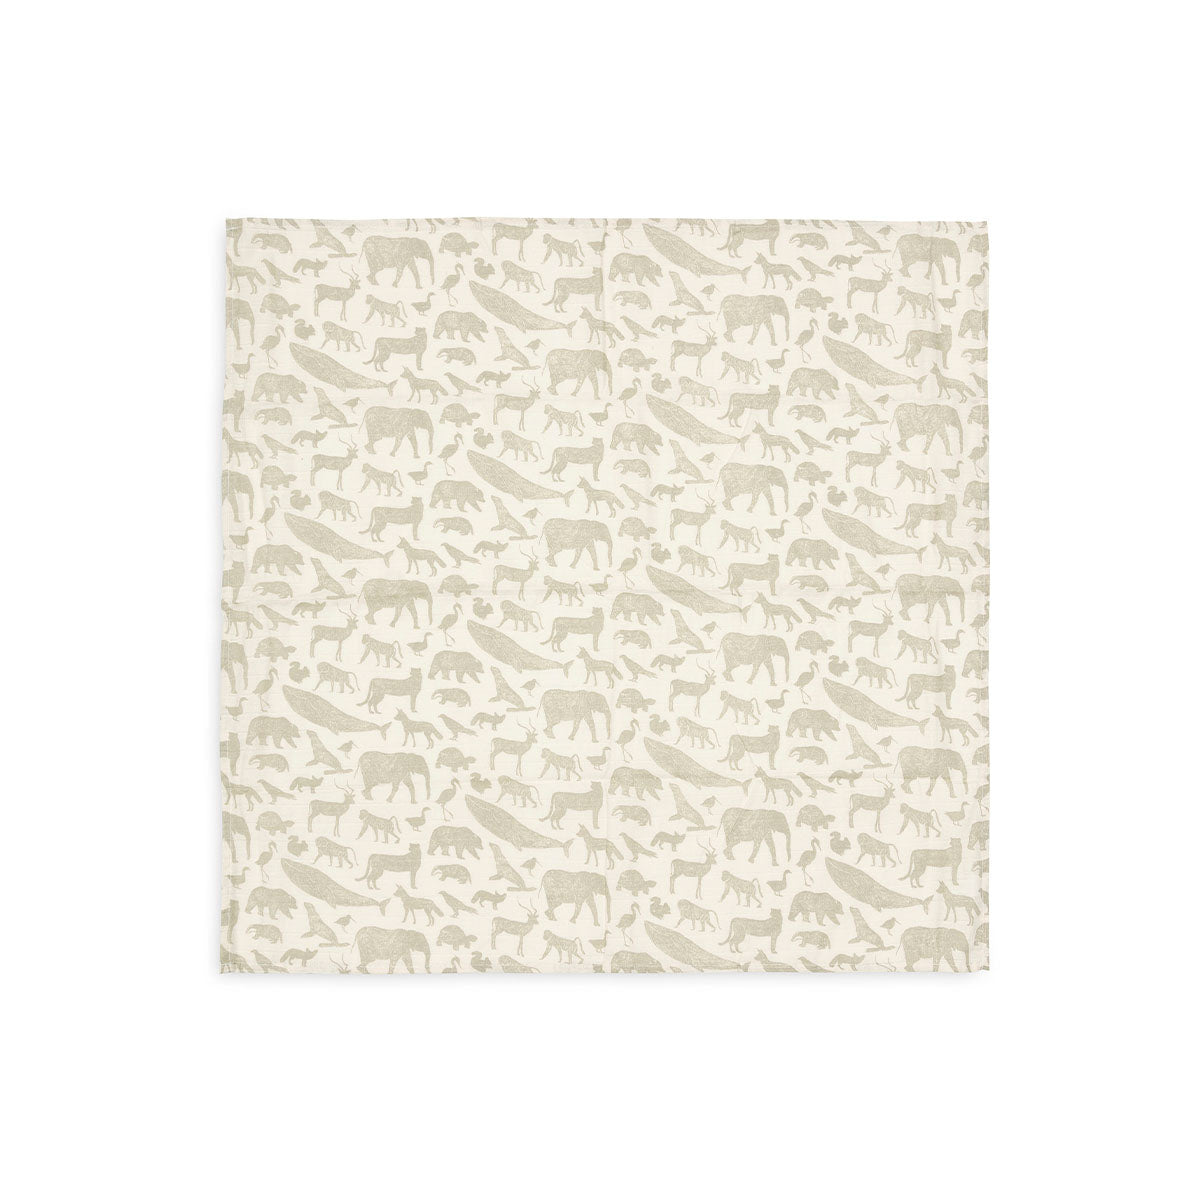 Een musthave: de 3-pack hydrofiel doek small in de variant happy Miffy nougat van Jollein. Want van swaddle doeken heb je als ouders nooit genoeg. Functioneel en hip! Afmeting 70  x 70 cm. VanZus